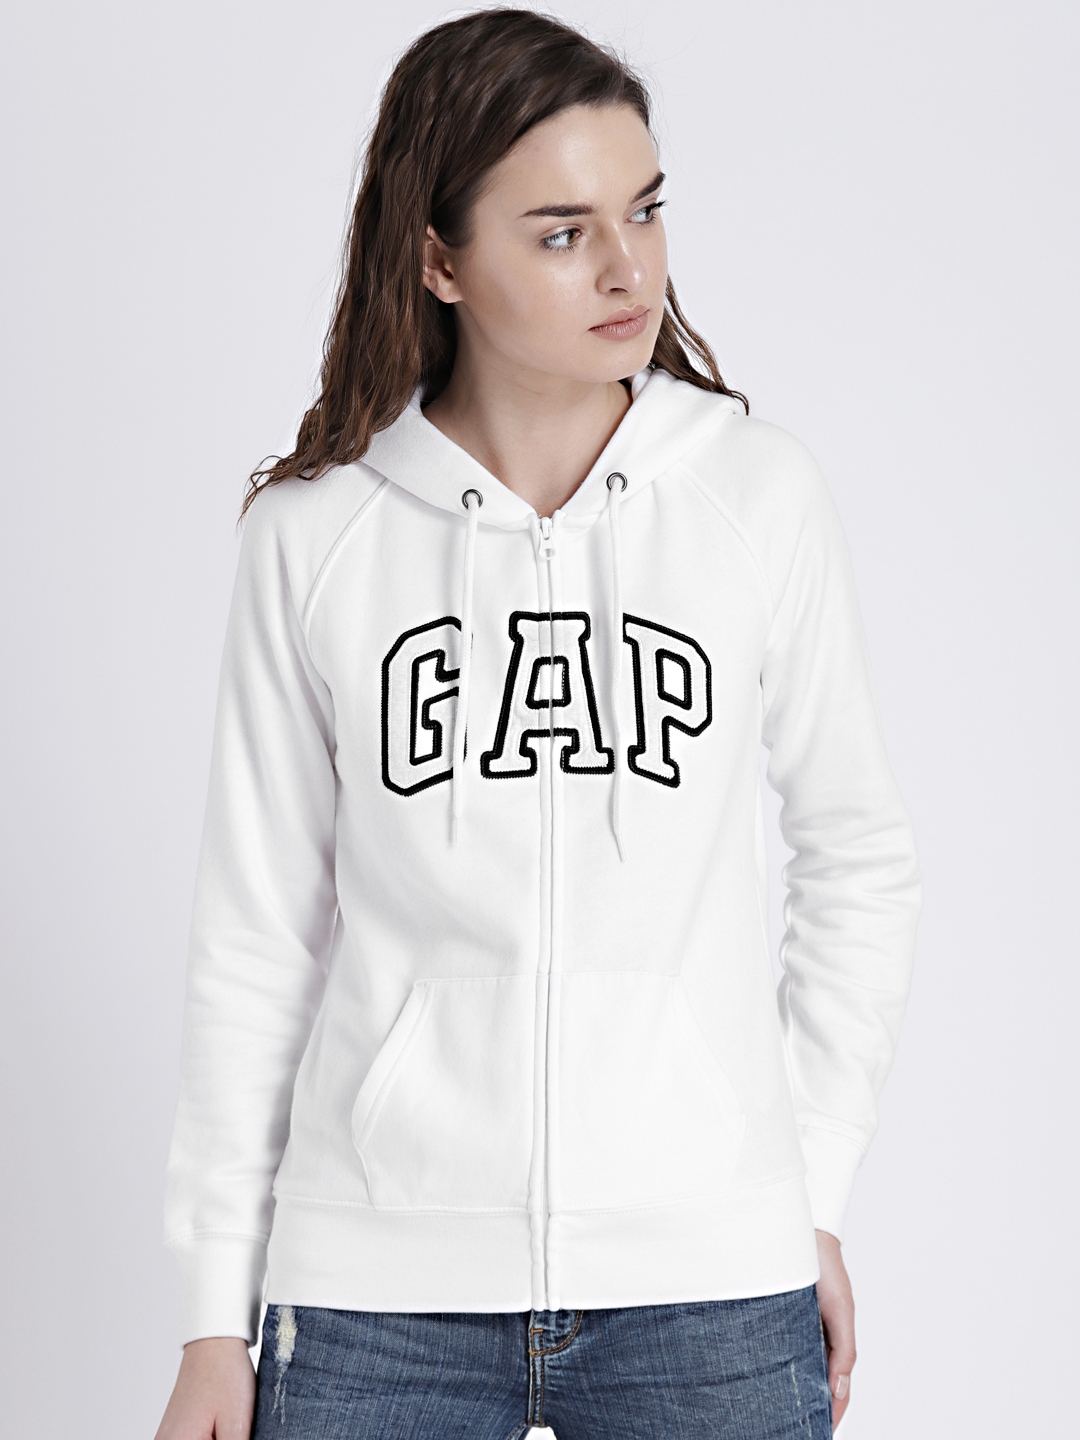 gap zip up hoodie womens